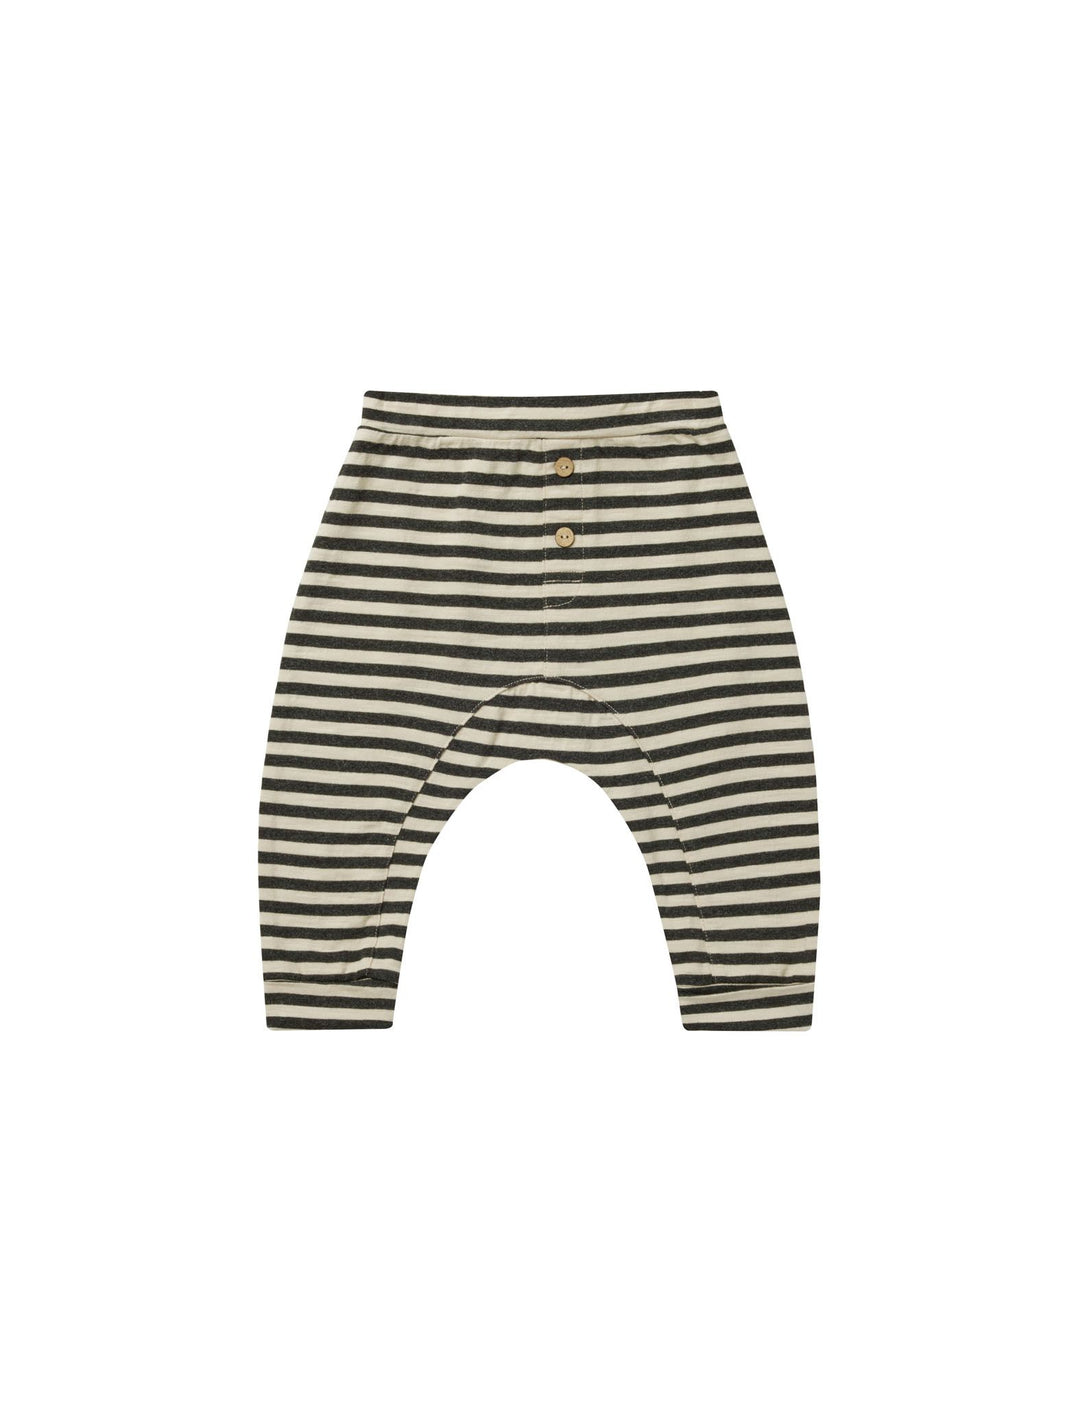 Baby Cru Black Stripe Pant by Rylee and Cru